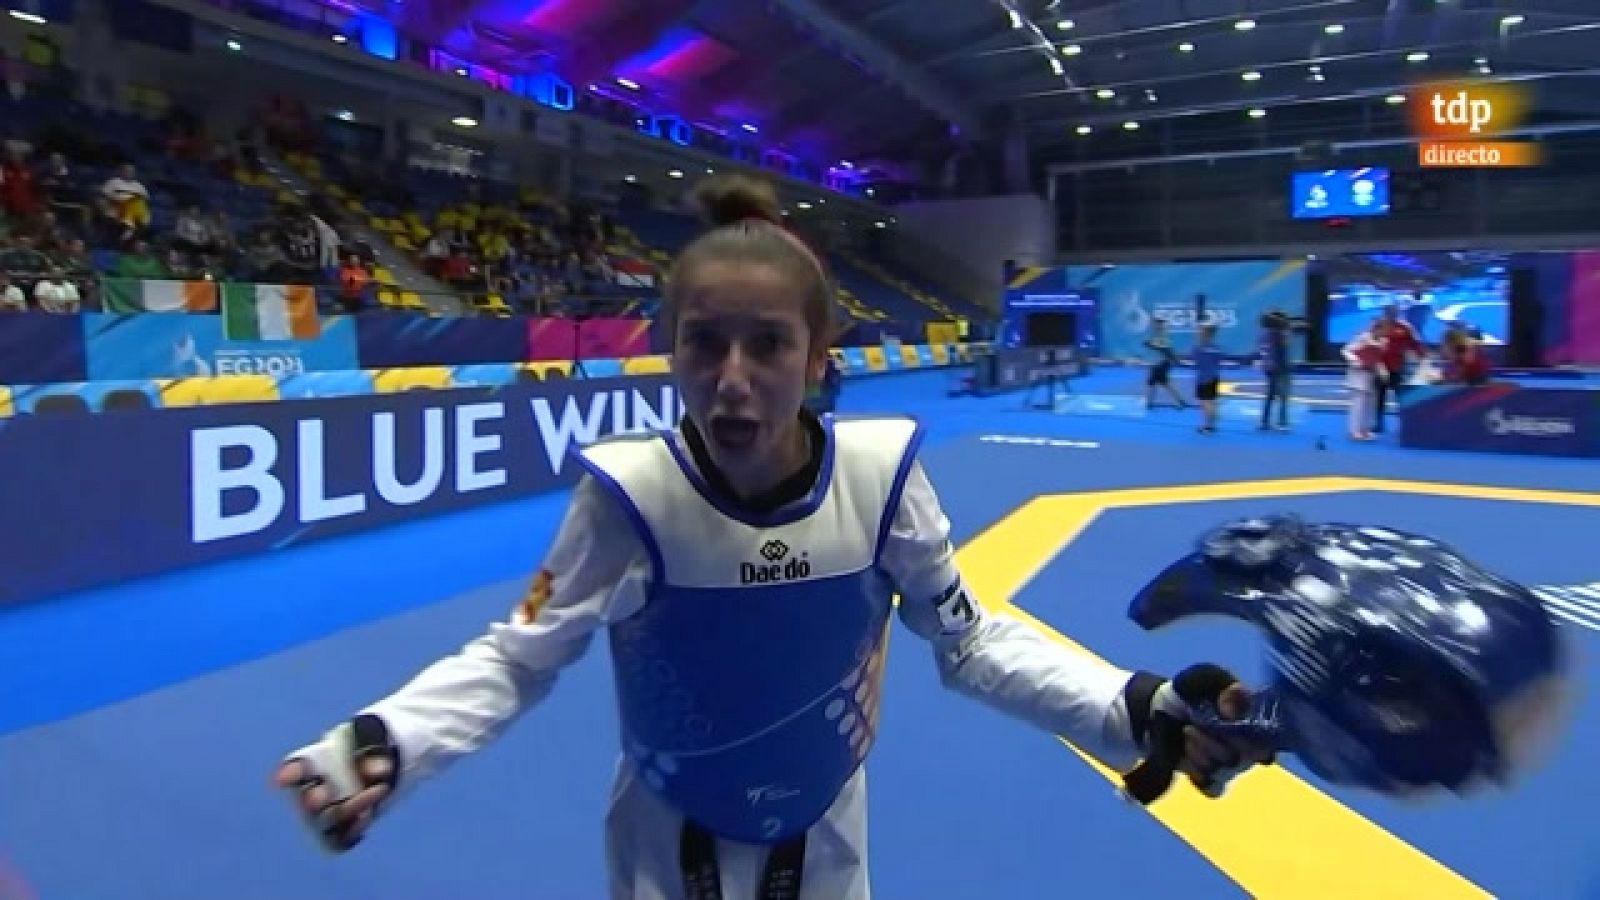 La taekwondista Adriana Cerezo, oro en los Juegos Europeos